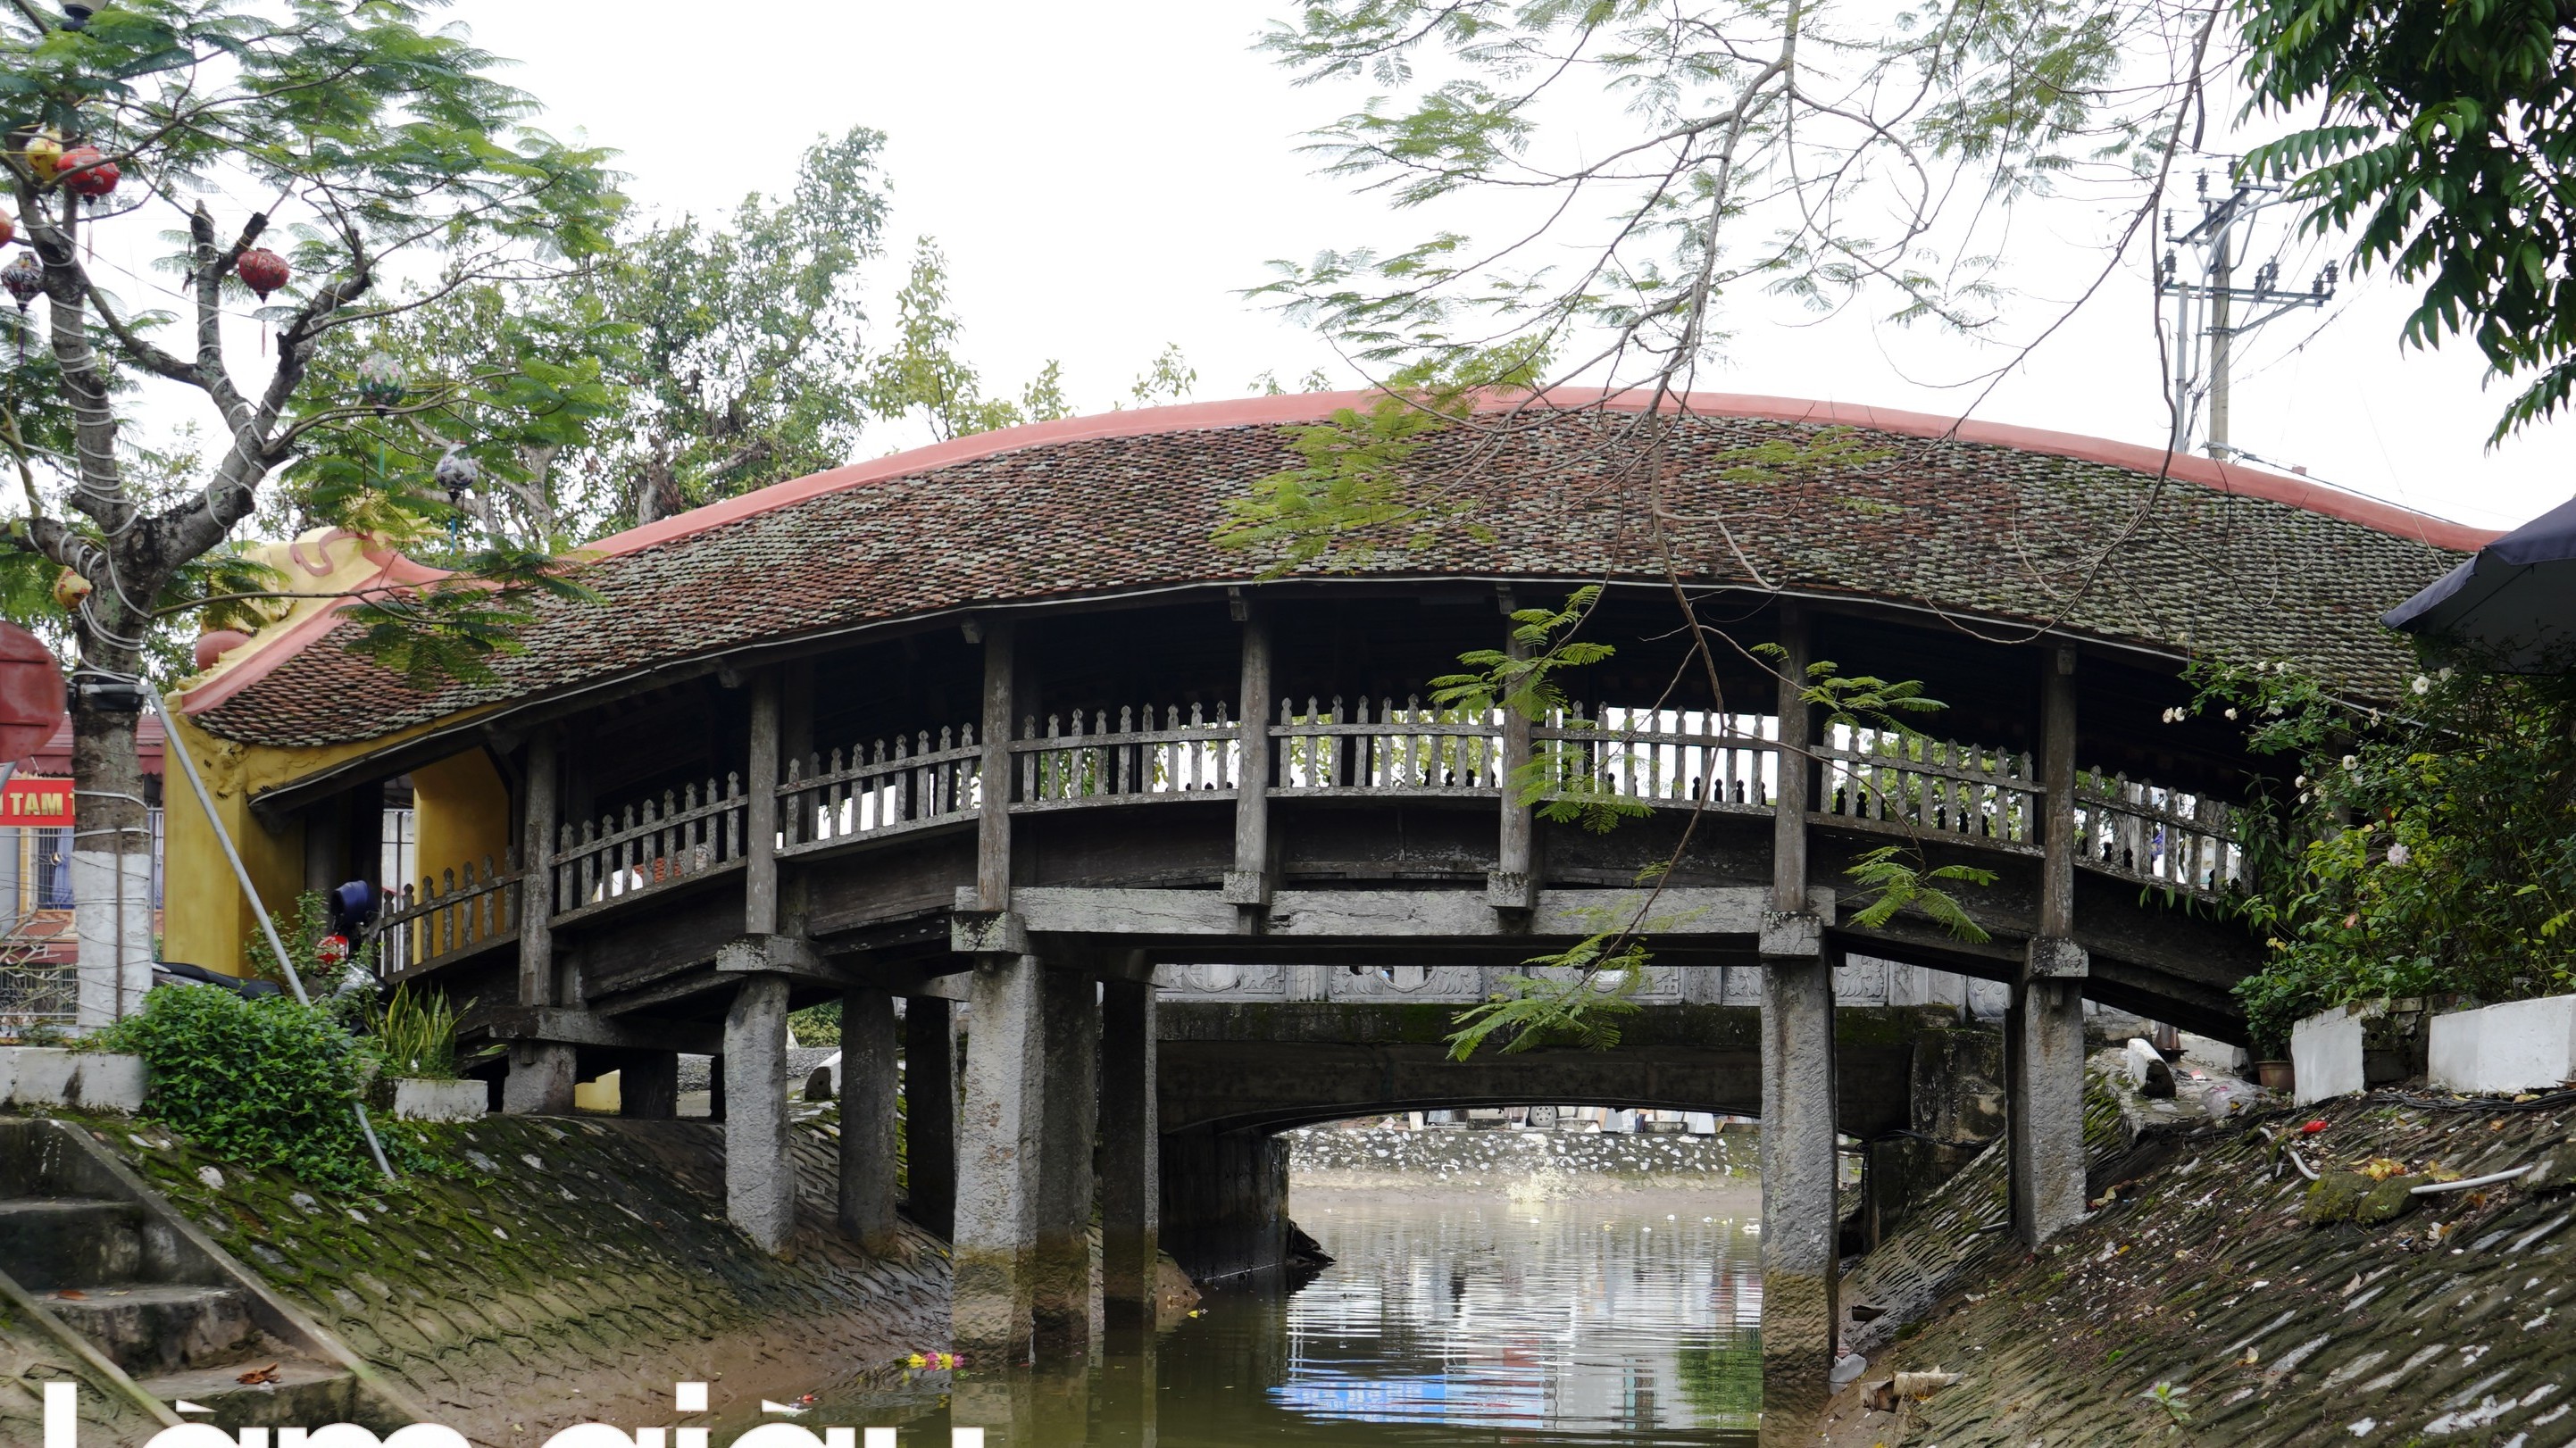 Chiêm ngưỡng vẻ đẹp độc đáo của cây cầu Ngói hơn 500 tuổi